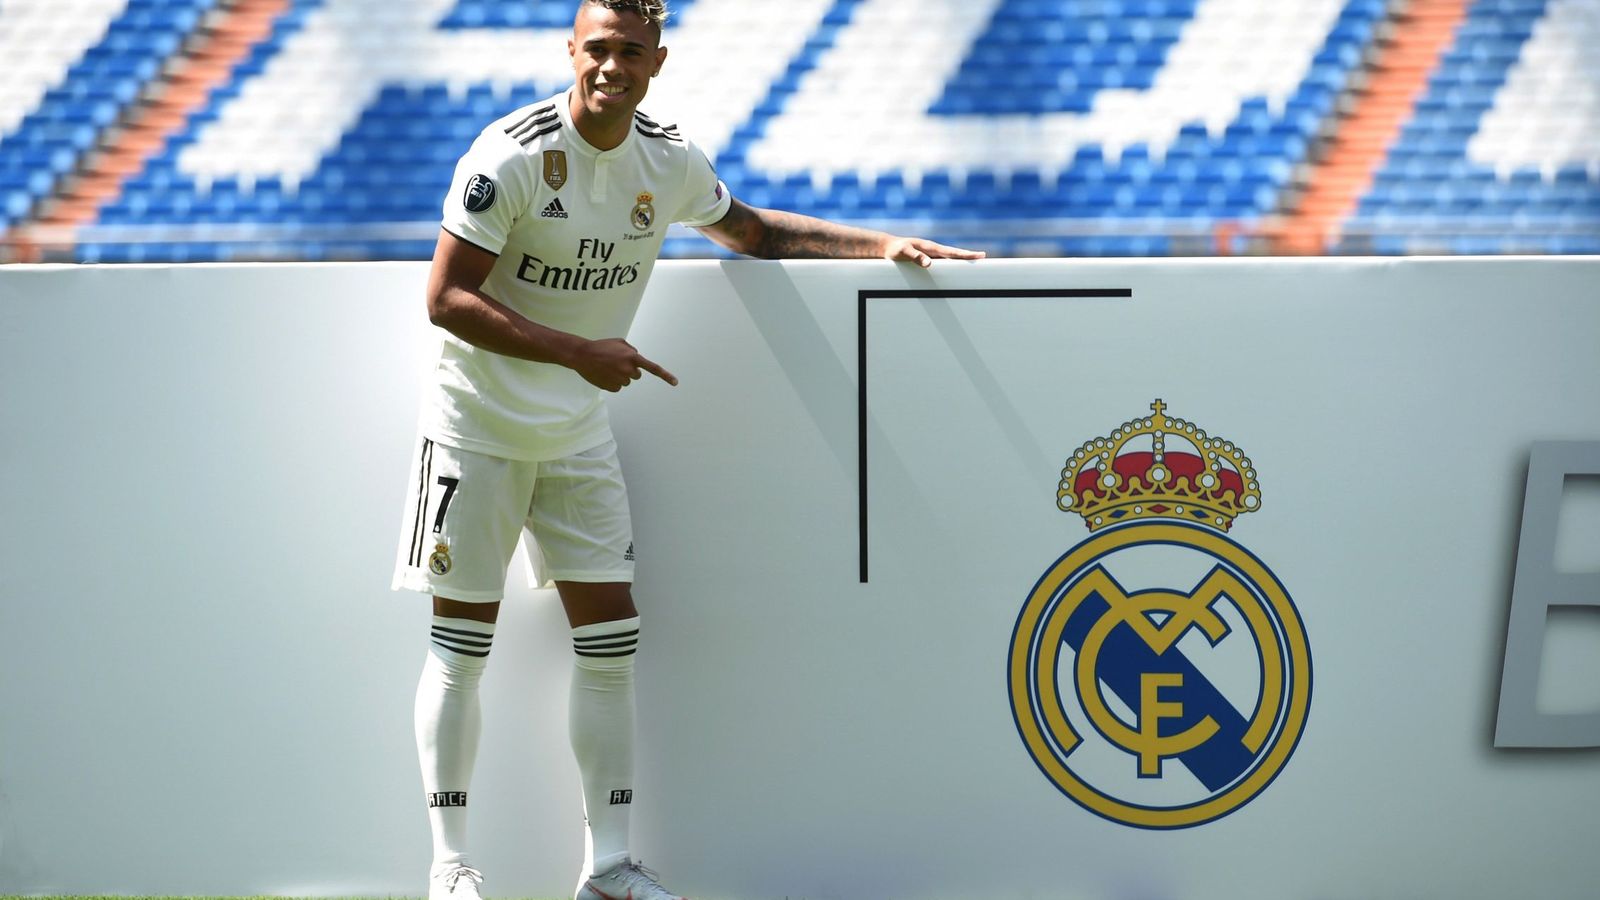 Foto: Mariano en su presentación como jugador del Real Madrid en el césped del Bernabéu. (Efe)